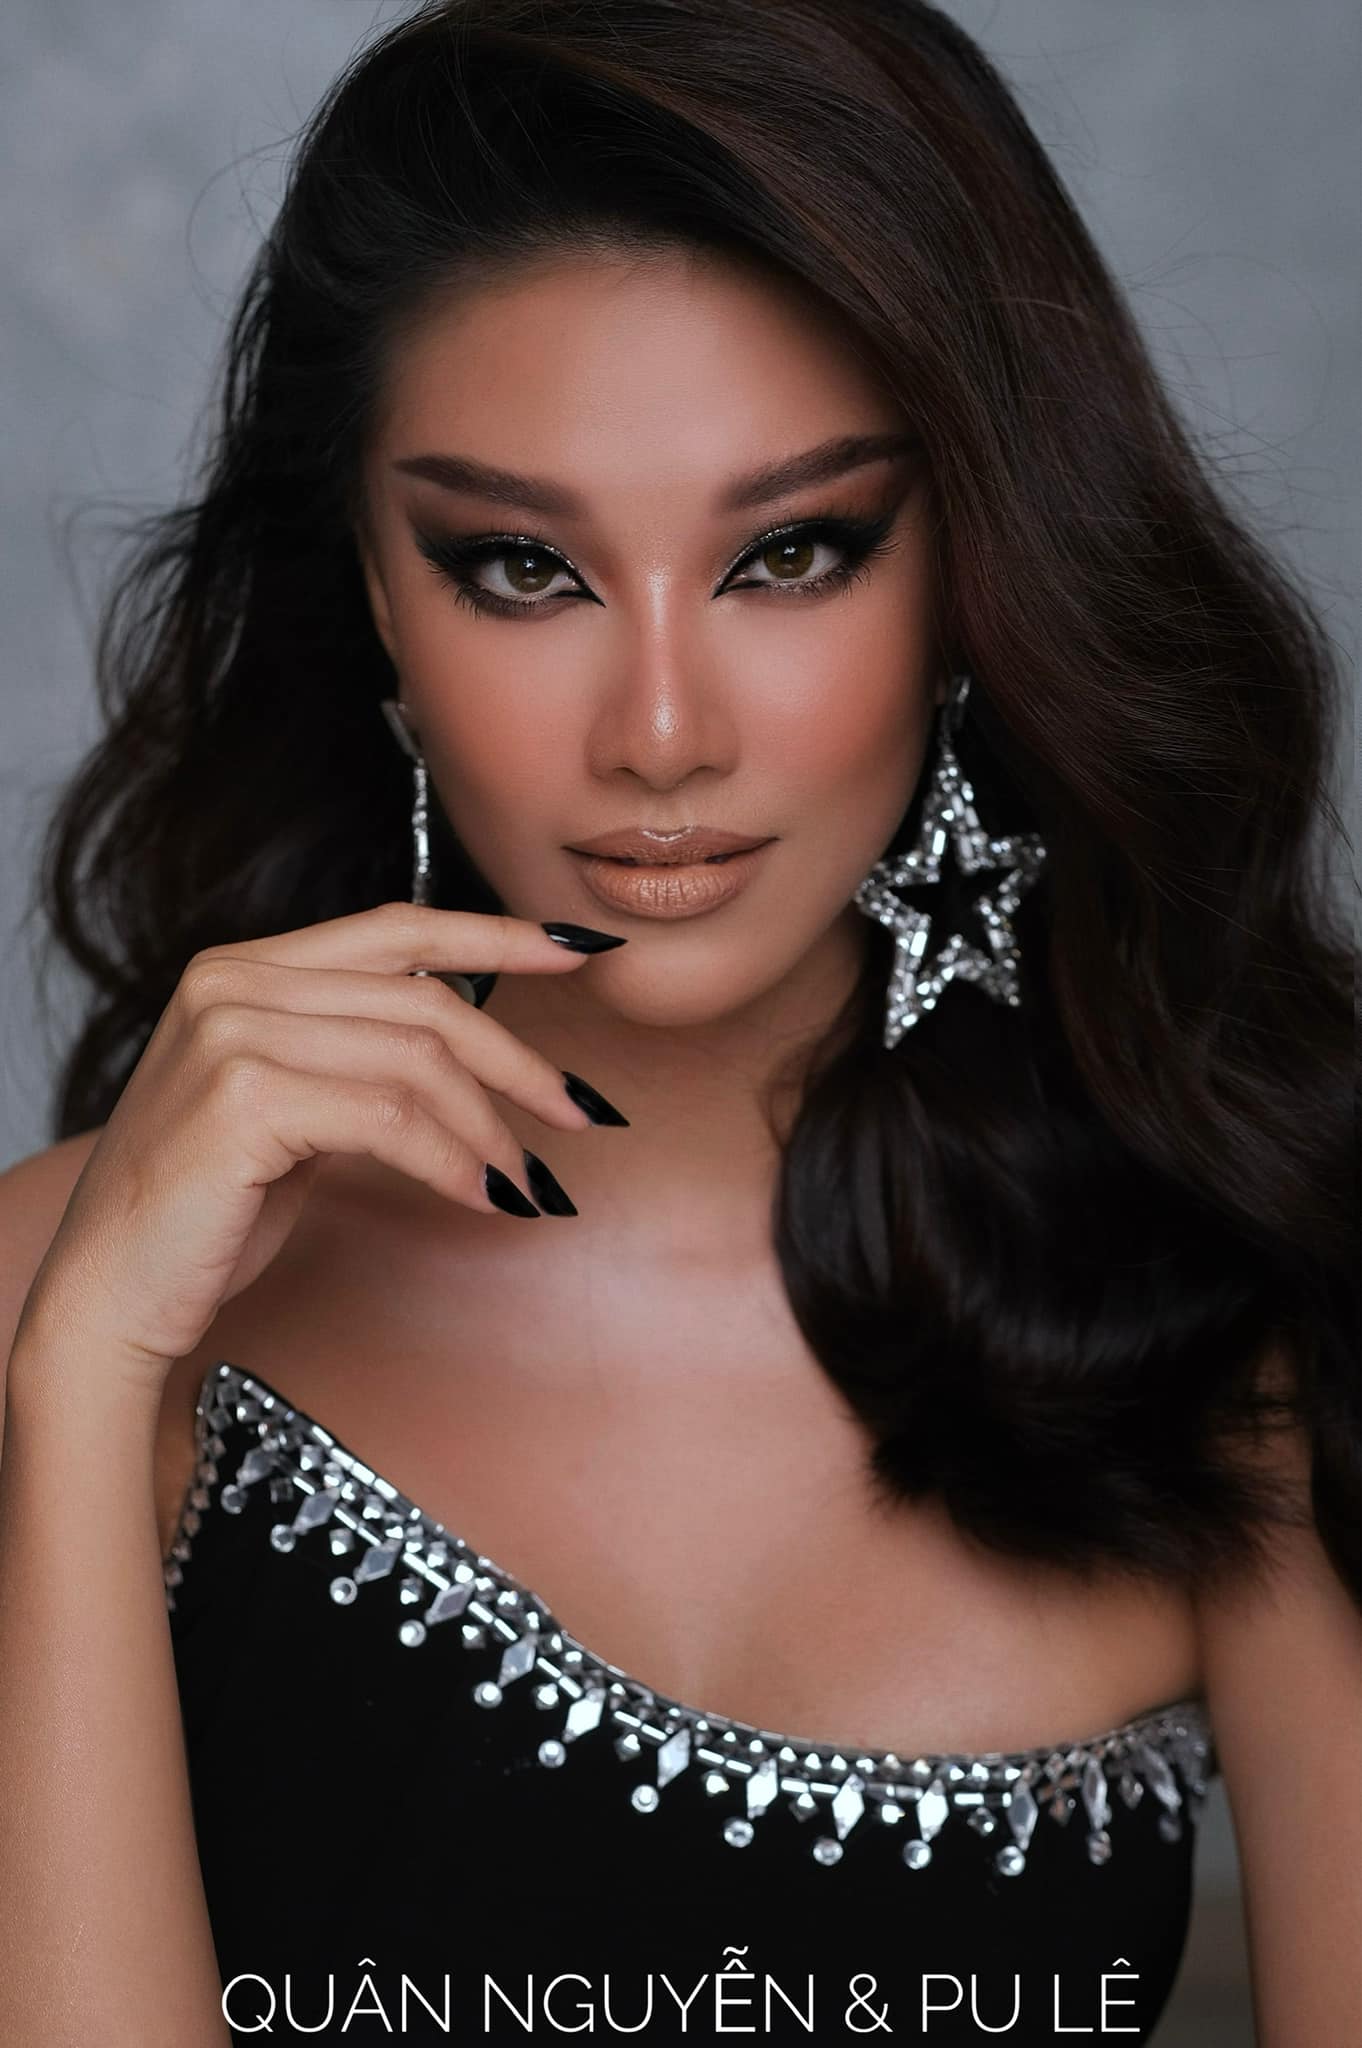 Chỉ còn khoảng 4 tháng nữa, Kim Duyên sẽ sang Israel để thi Miss Universe 2021